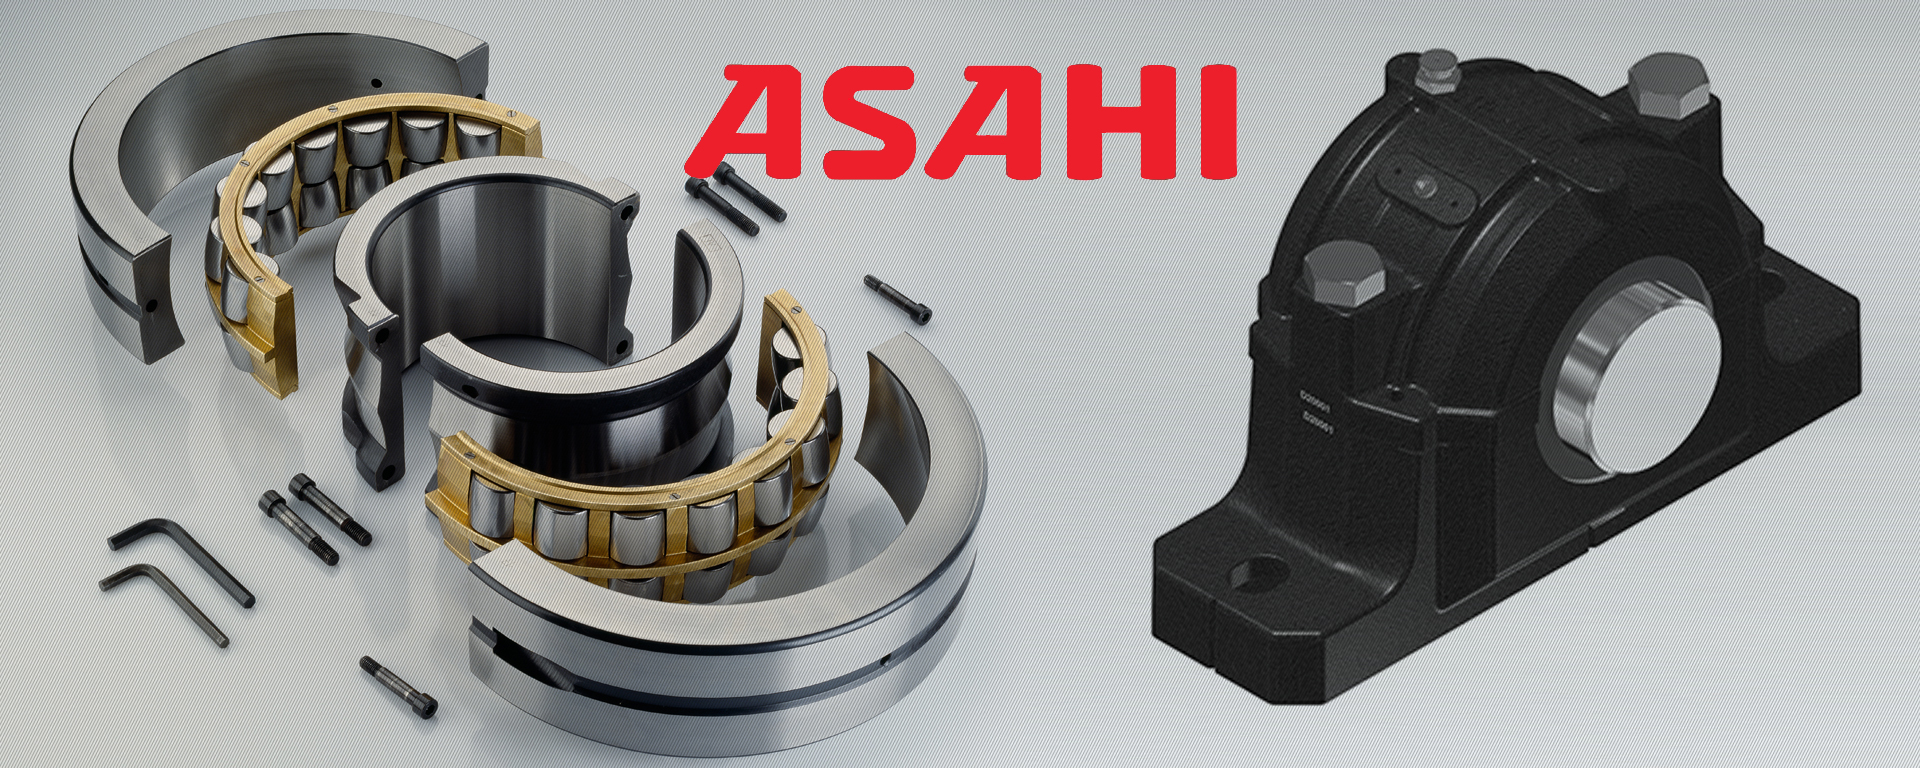 ASAHI轴承 - 上海巨鹏轴承有限公司